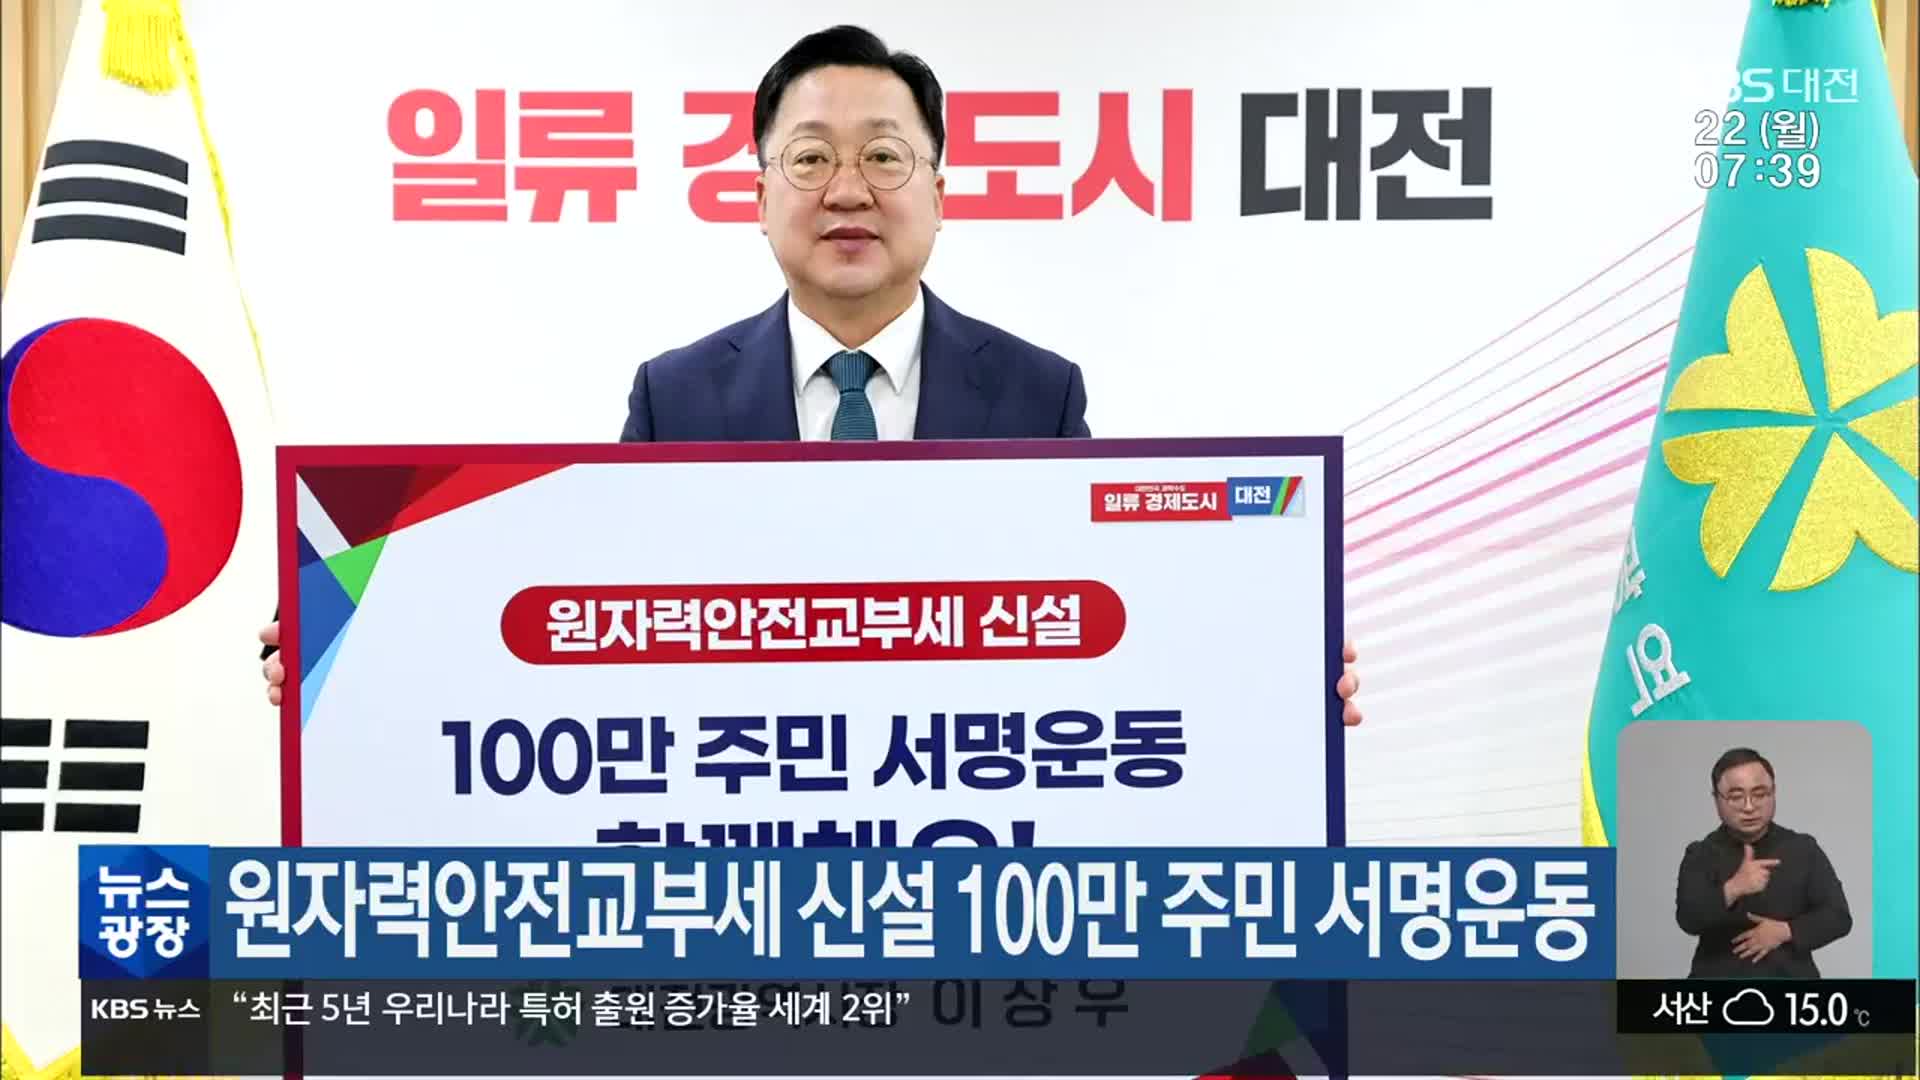 원자력안전교부세 신설 100만 주민 서명운동 